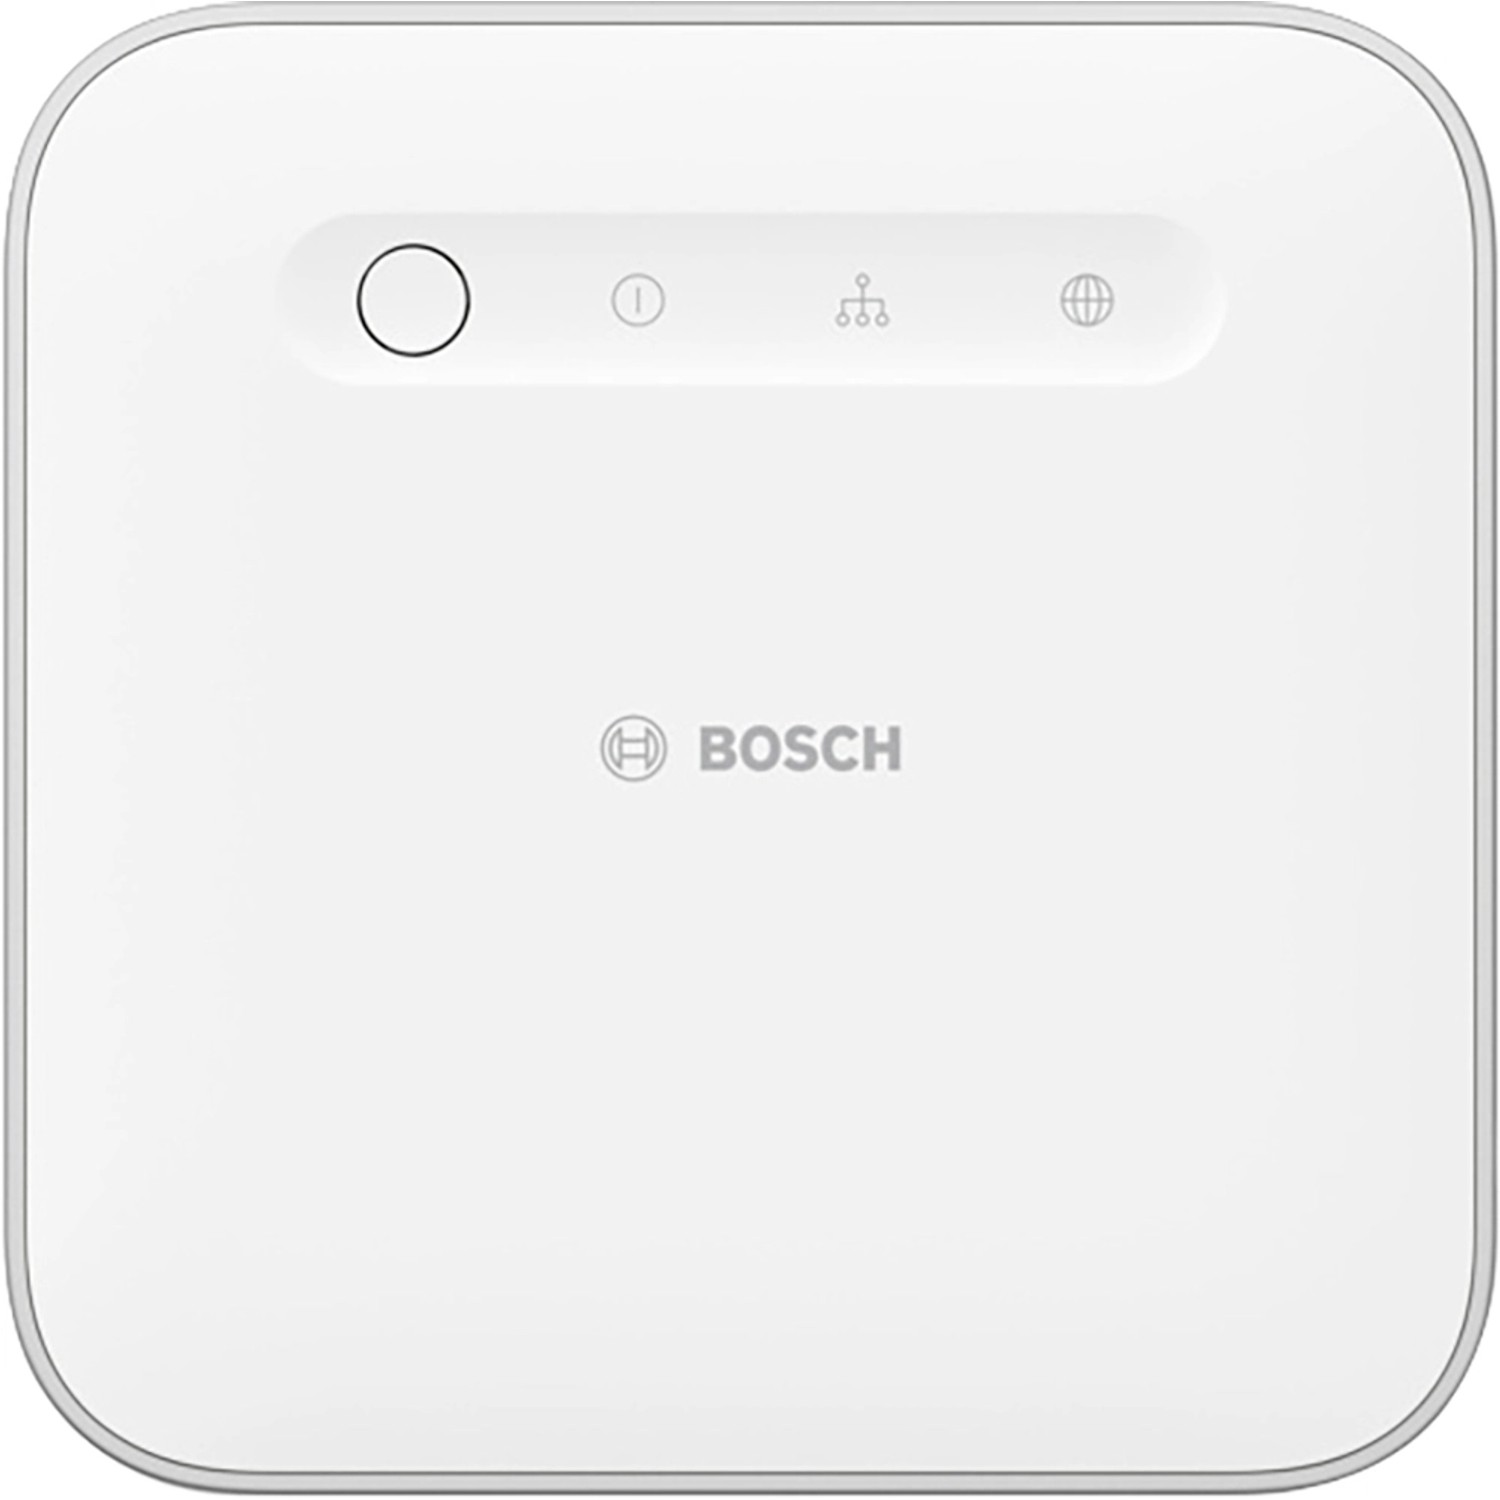 Bosch Smart Home Controller II BSHC-2 Weiß